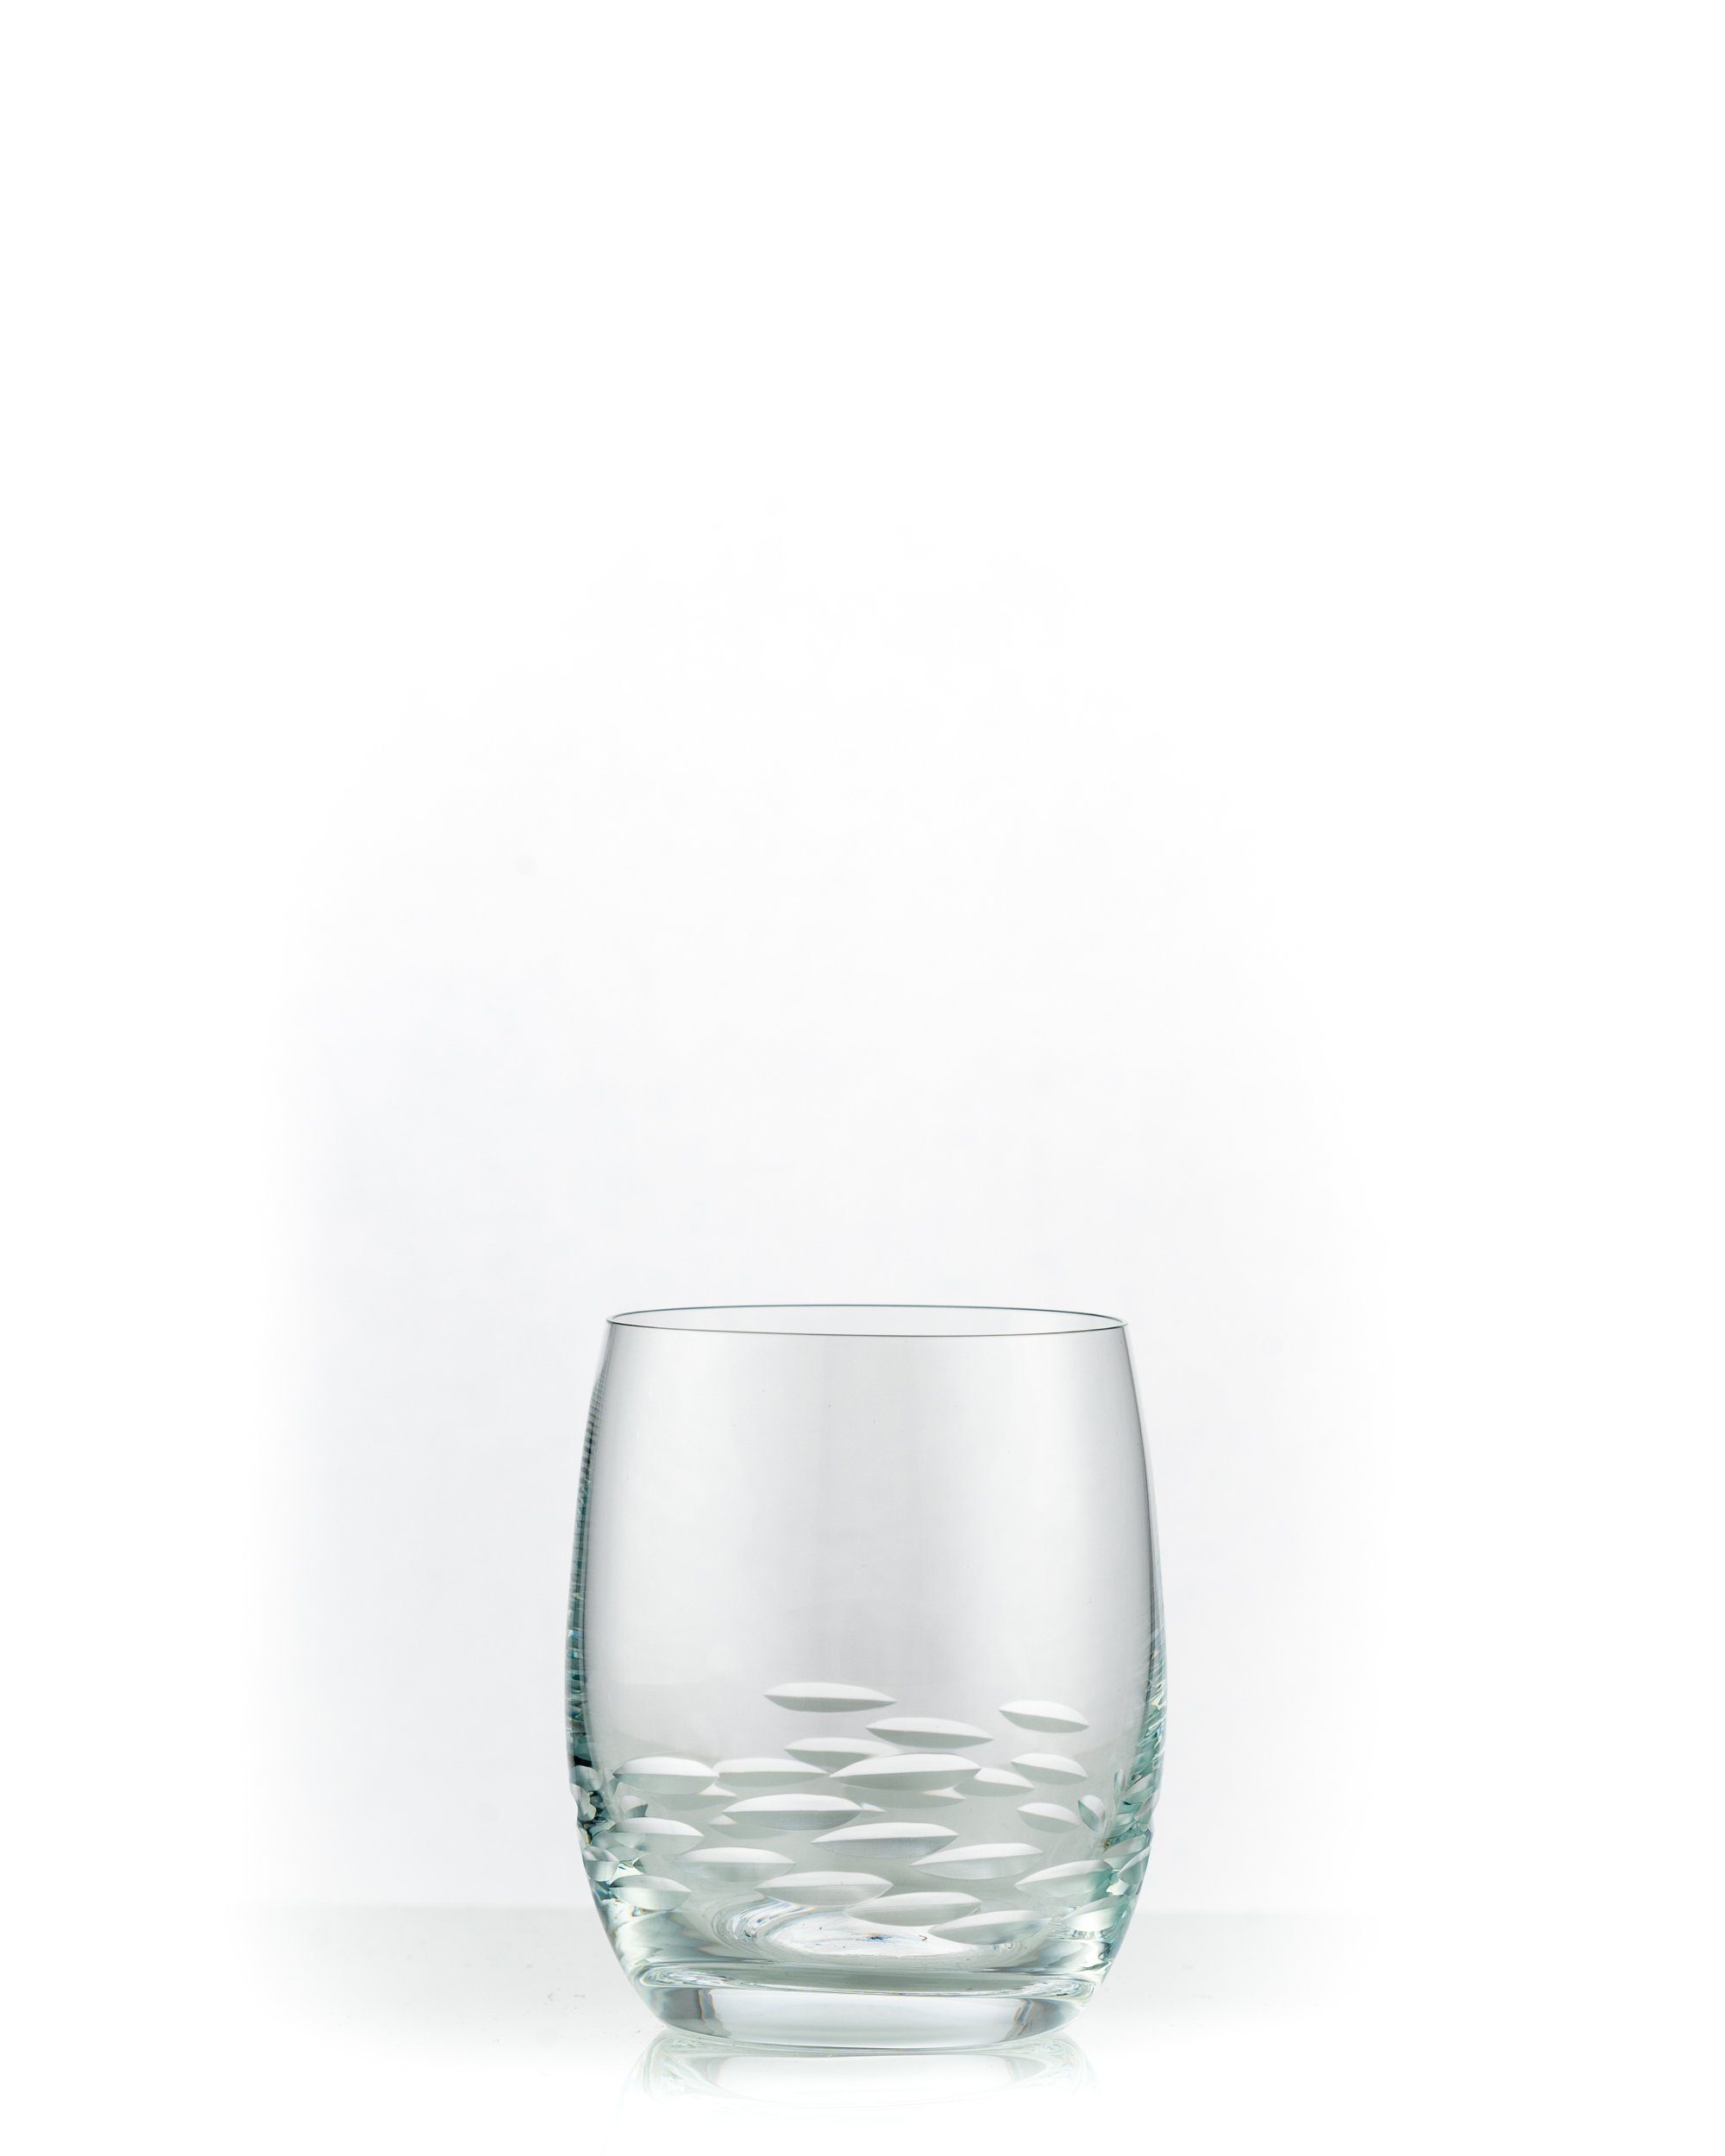 Crystalex Whiskyglas Viola Stone klar geschliffen 300 ml 6er Set, Kristallglas, Kristallglas, poliertem Schliff